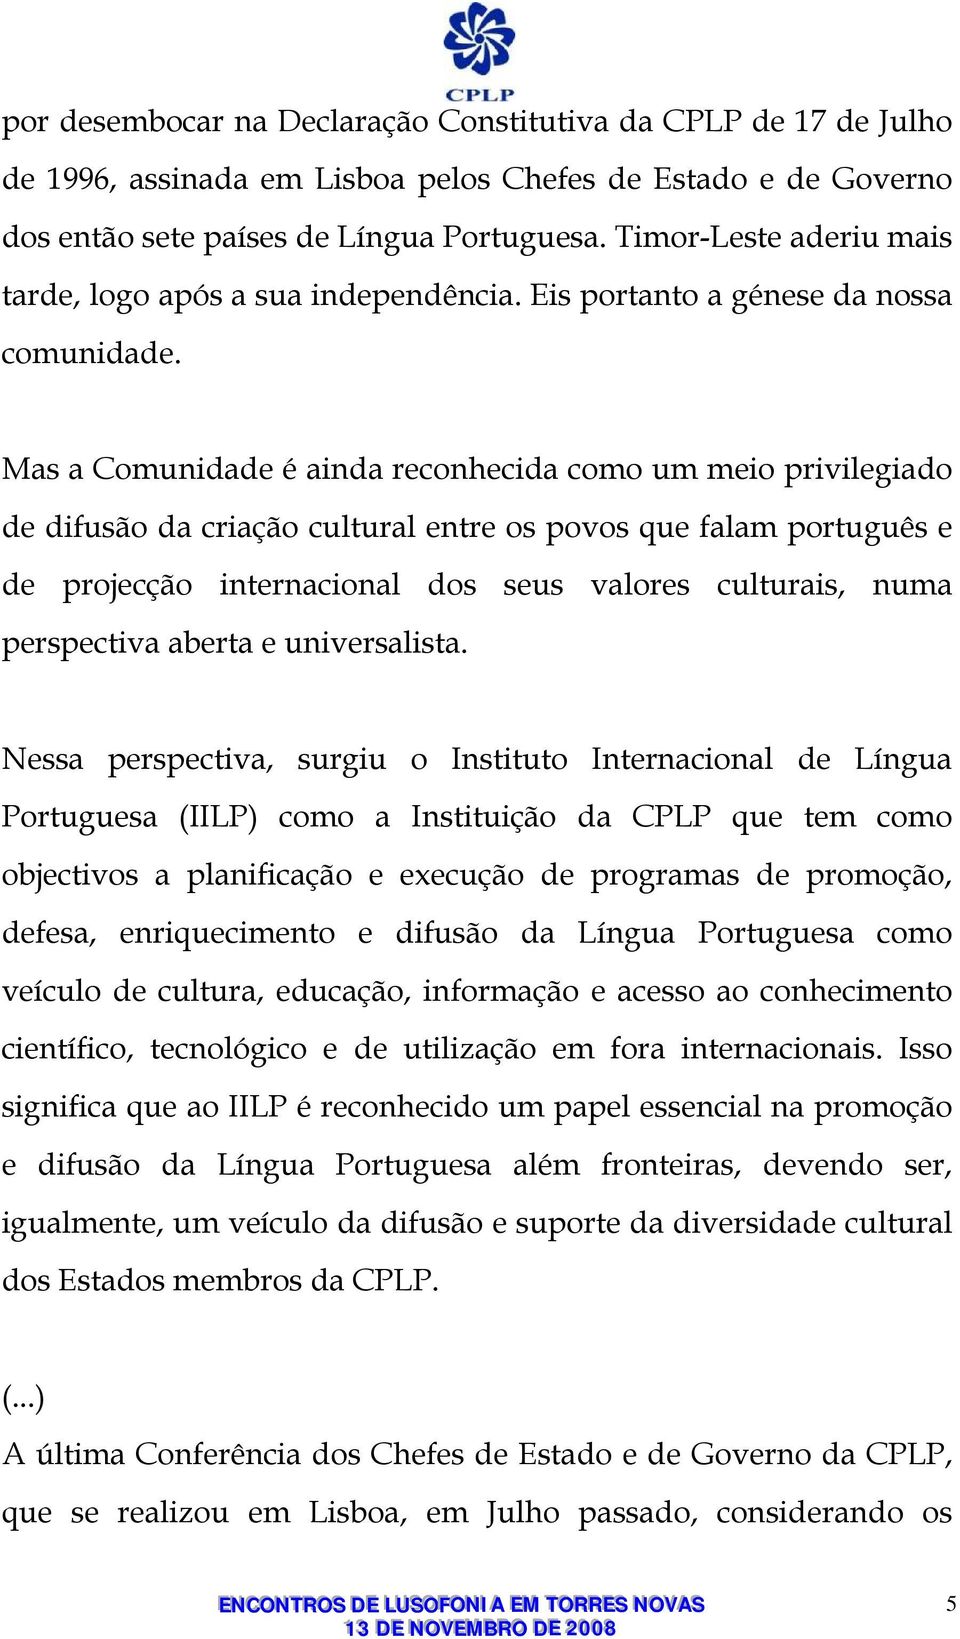 Mas a Comunidade é ainda reconhecida como um meio privilegiado de difusão da criação cultural entre os povos que falam português e de projecção internacional dos seus valores culturais, numa